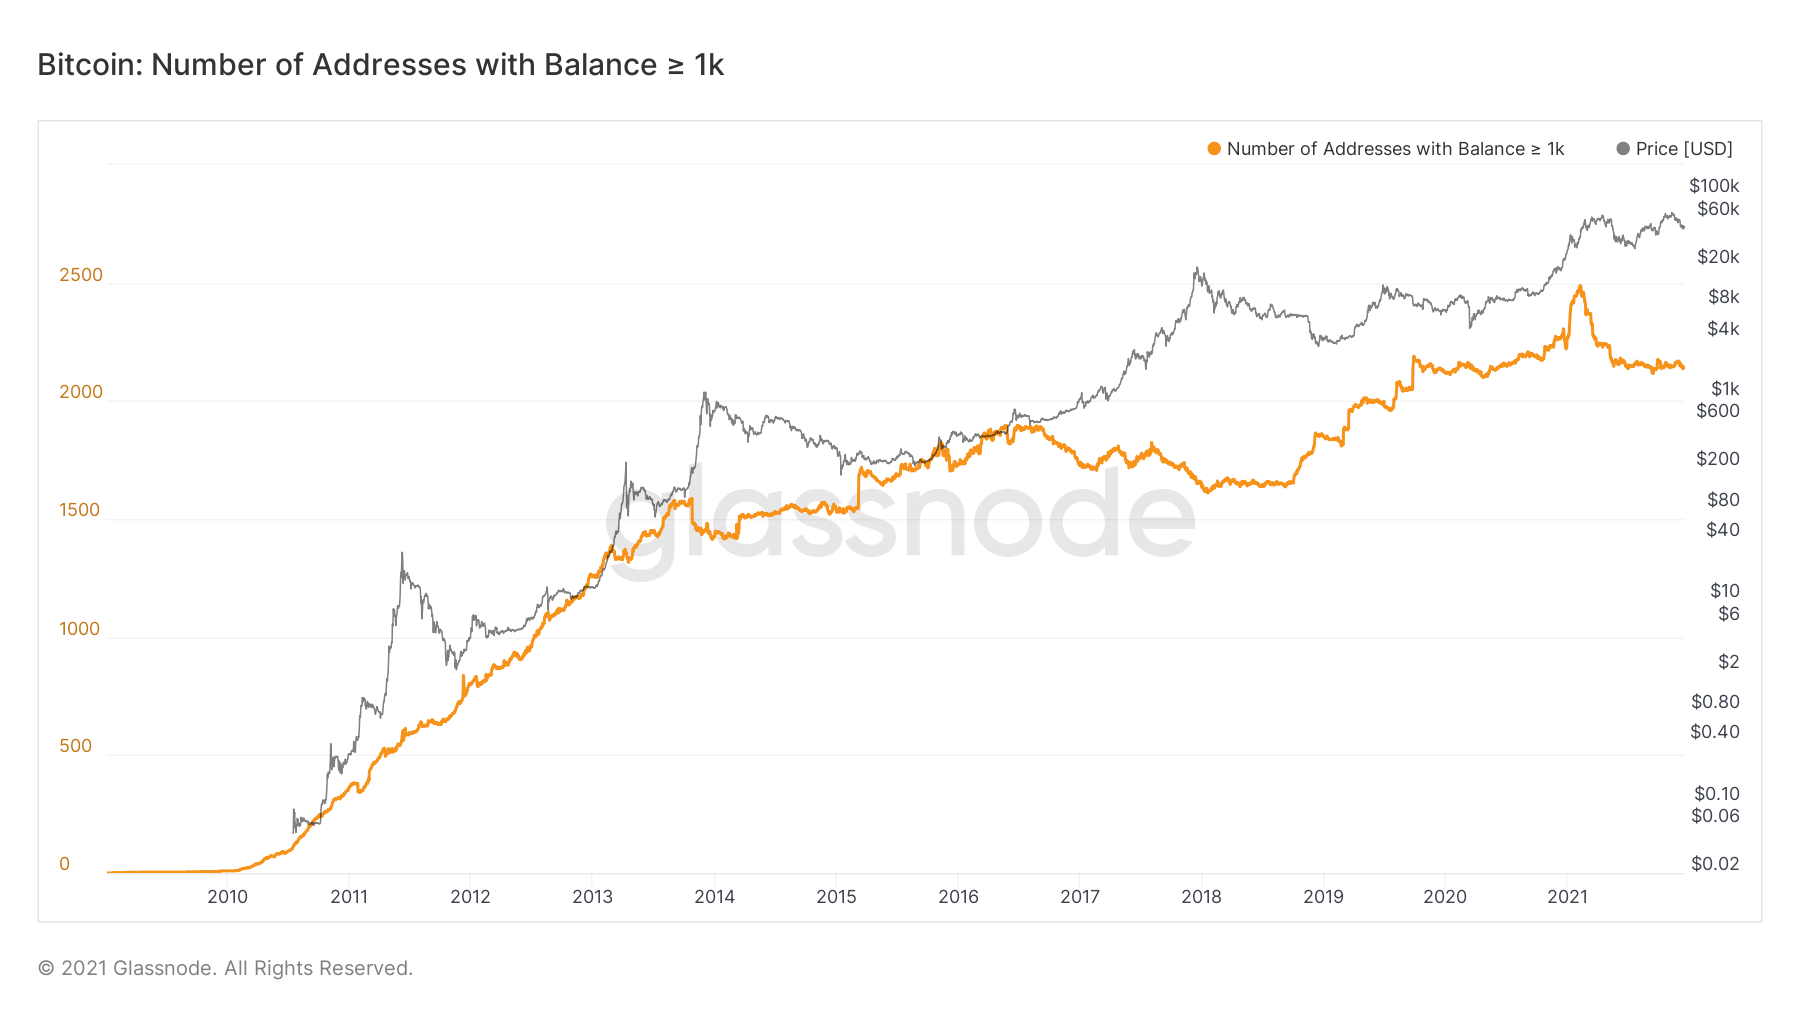 Dữ liệu cho thấy các nhà đầu tư bán lẻ đang mua và cá voi đang bán, sẽ ảnh hưởng thế nào đến giá Bitcoin ?